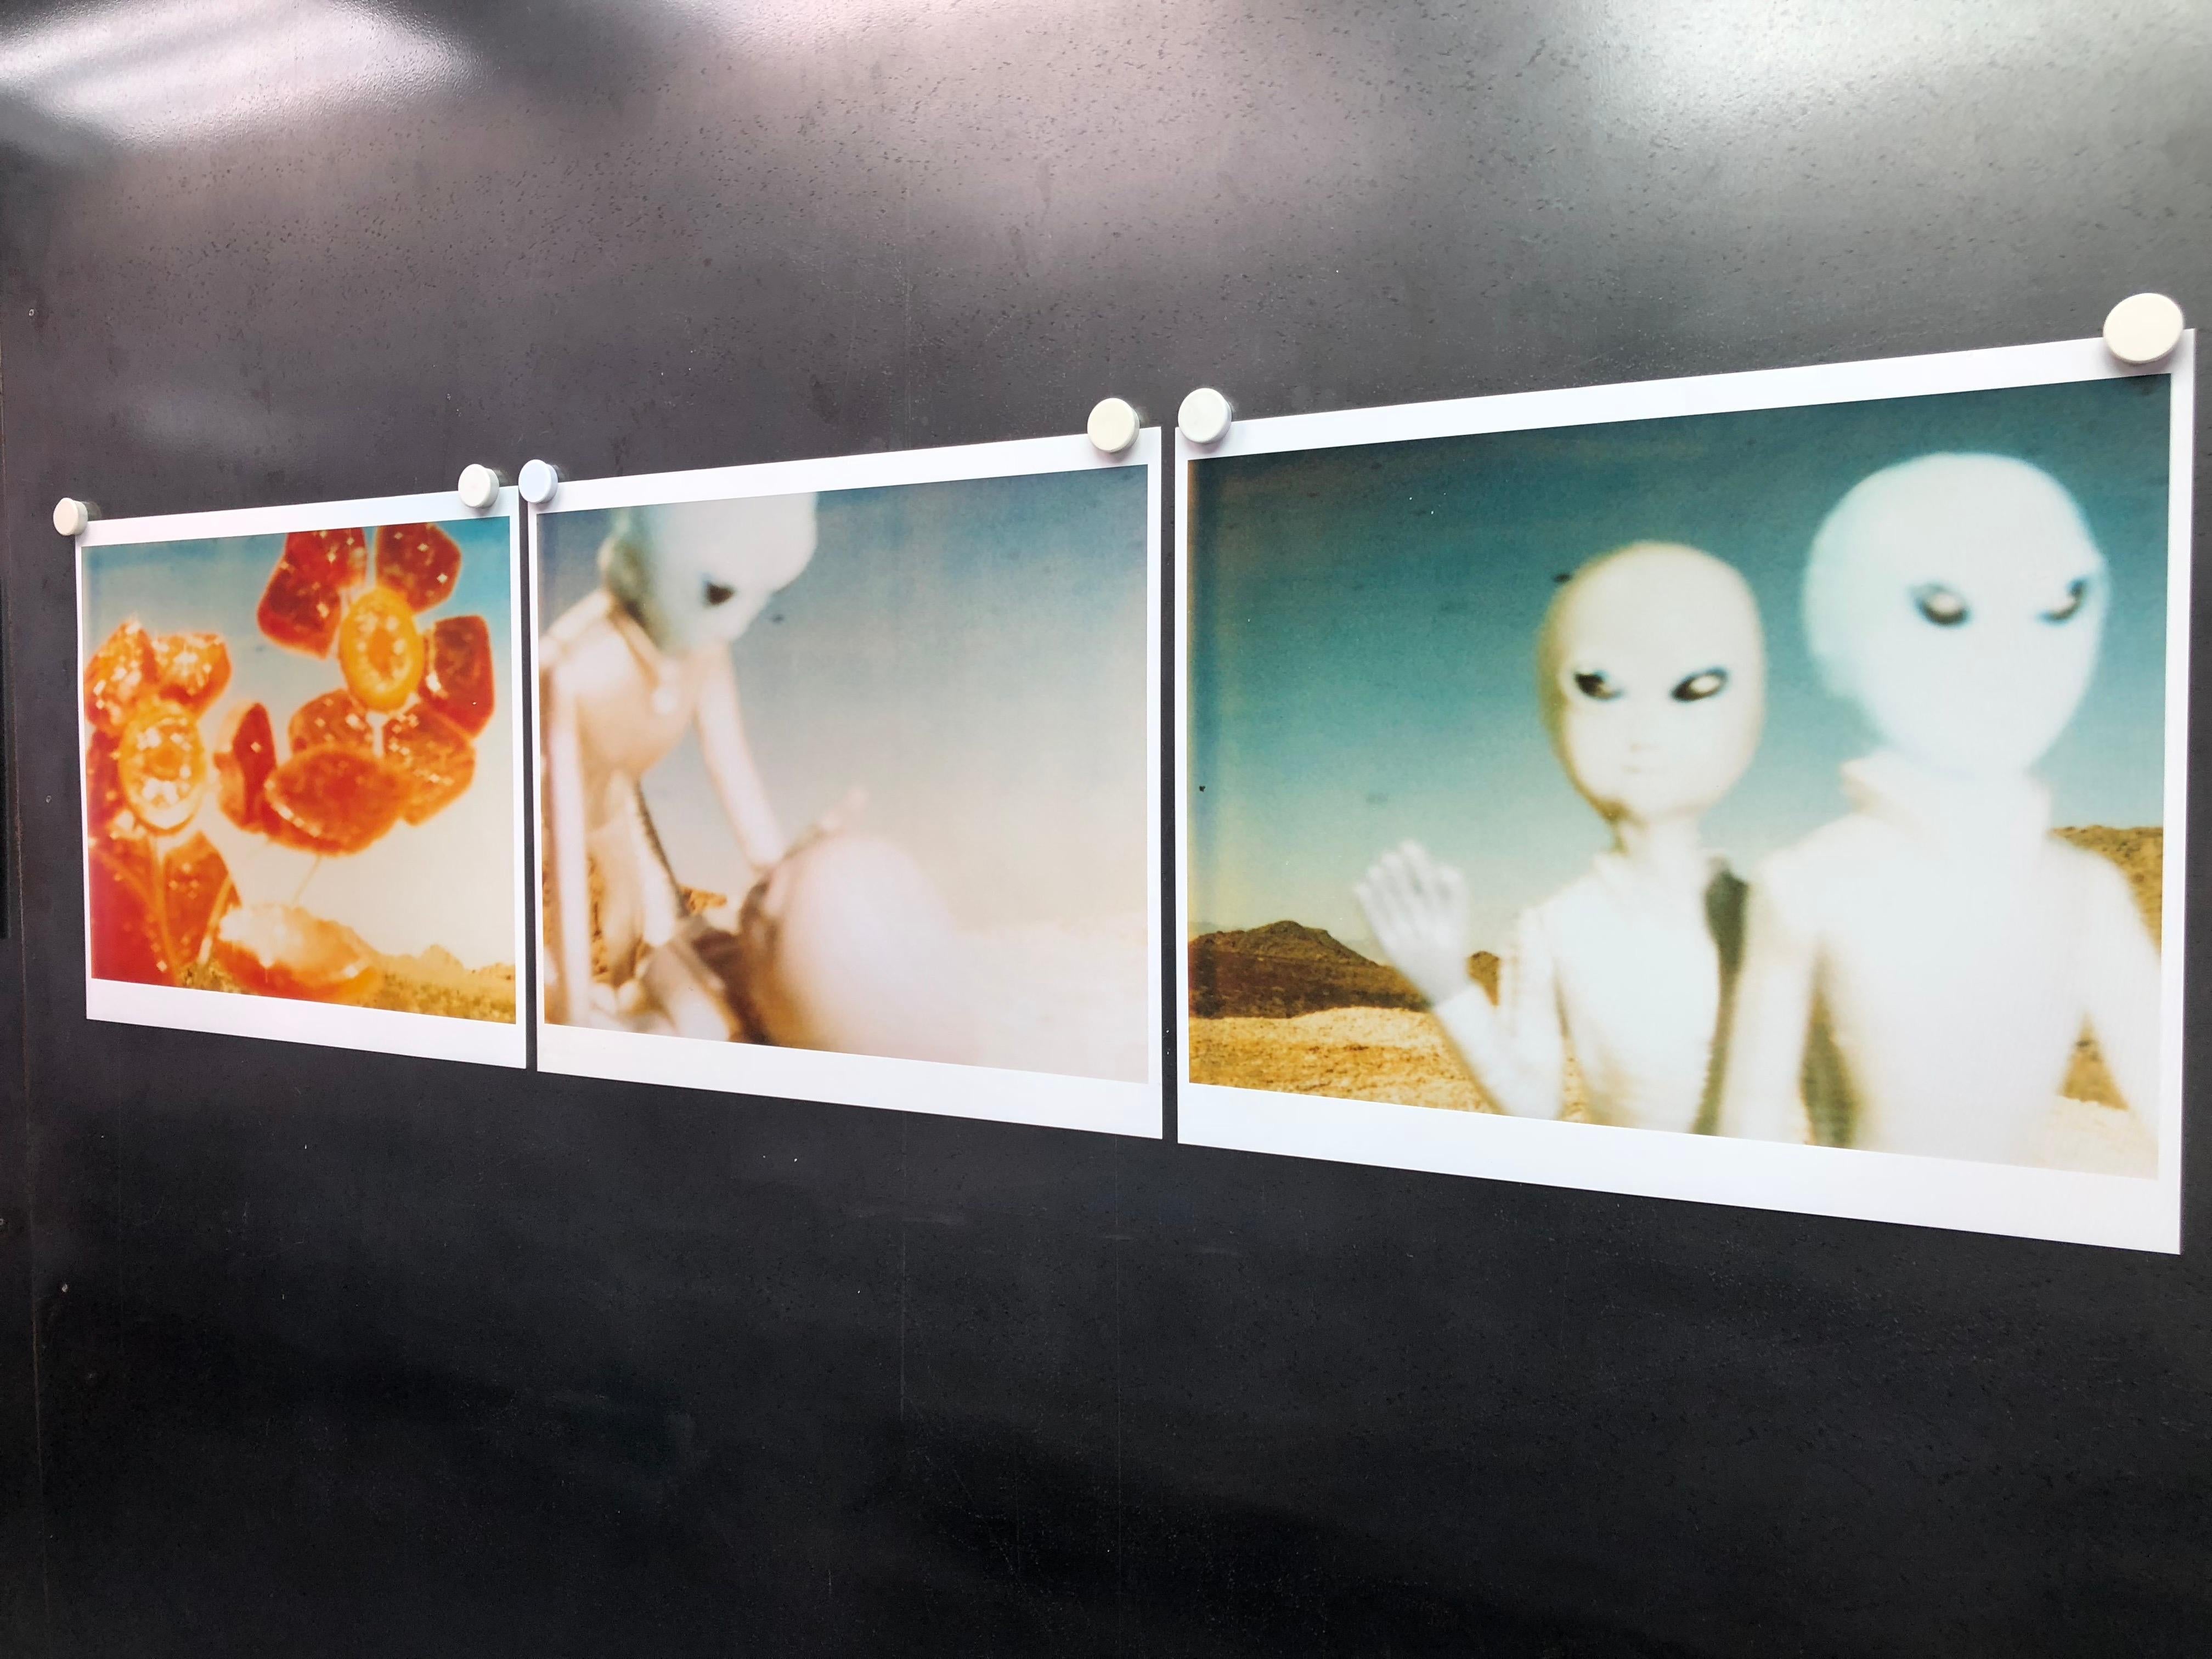 Aliens, Triptychon - 1998

Auflage von 5, 
48x59cm pro Stück, 48x190 installiert einschließlich der Lücken.
analoger C-Print, vom Künstler handgedruckt auf Fuji Crystal Archive Papier, mattes Finish, 
basierend auf einem Polaroid, einem Zertifikat